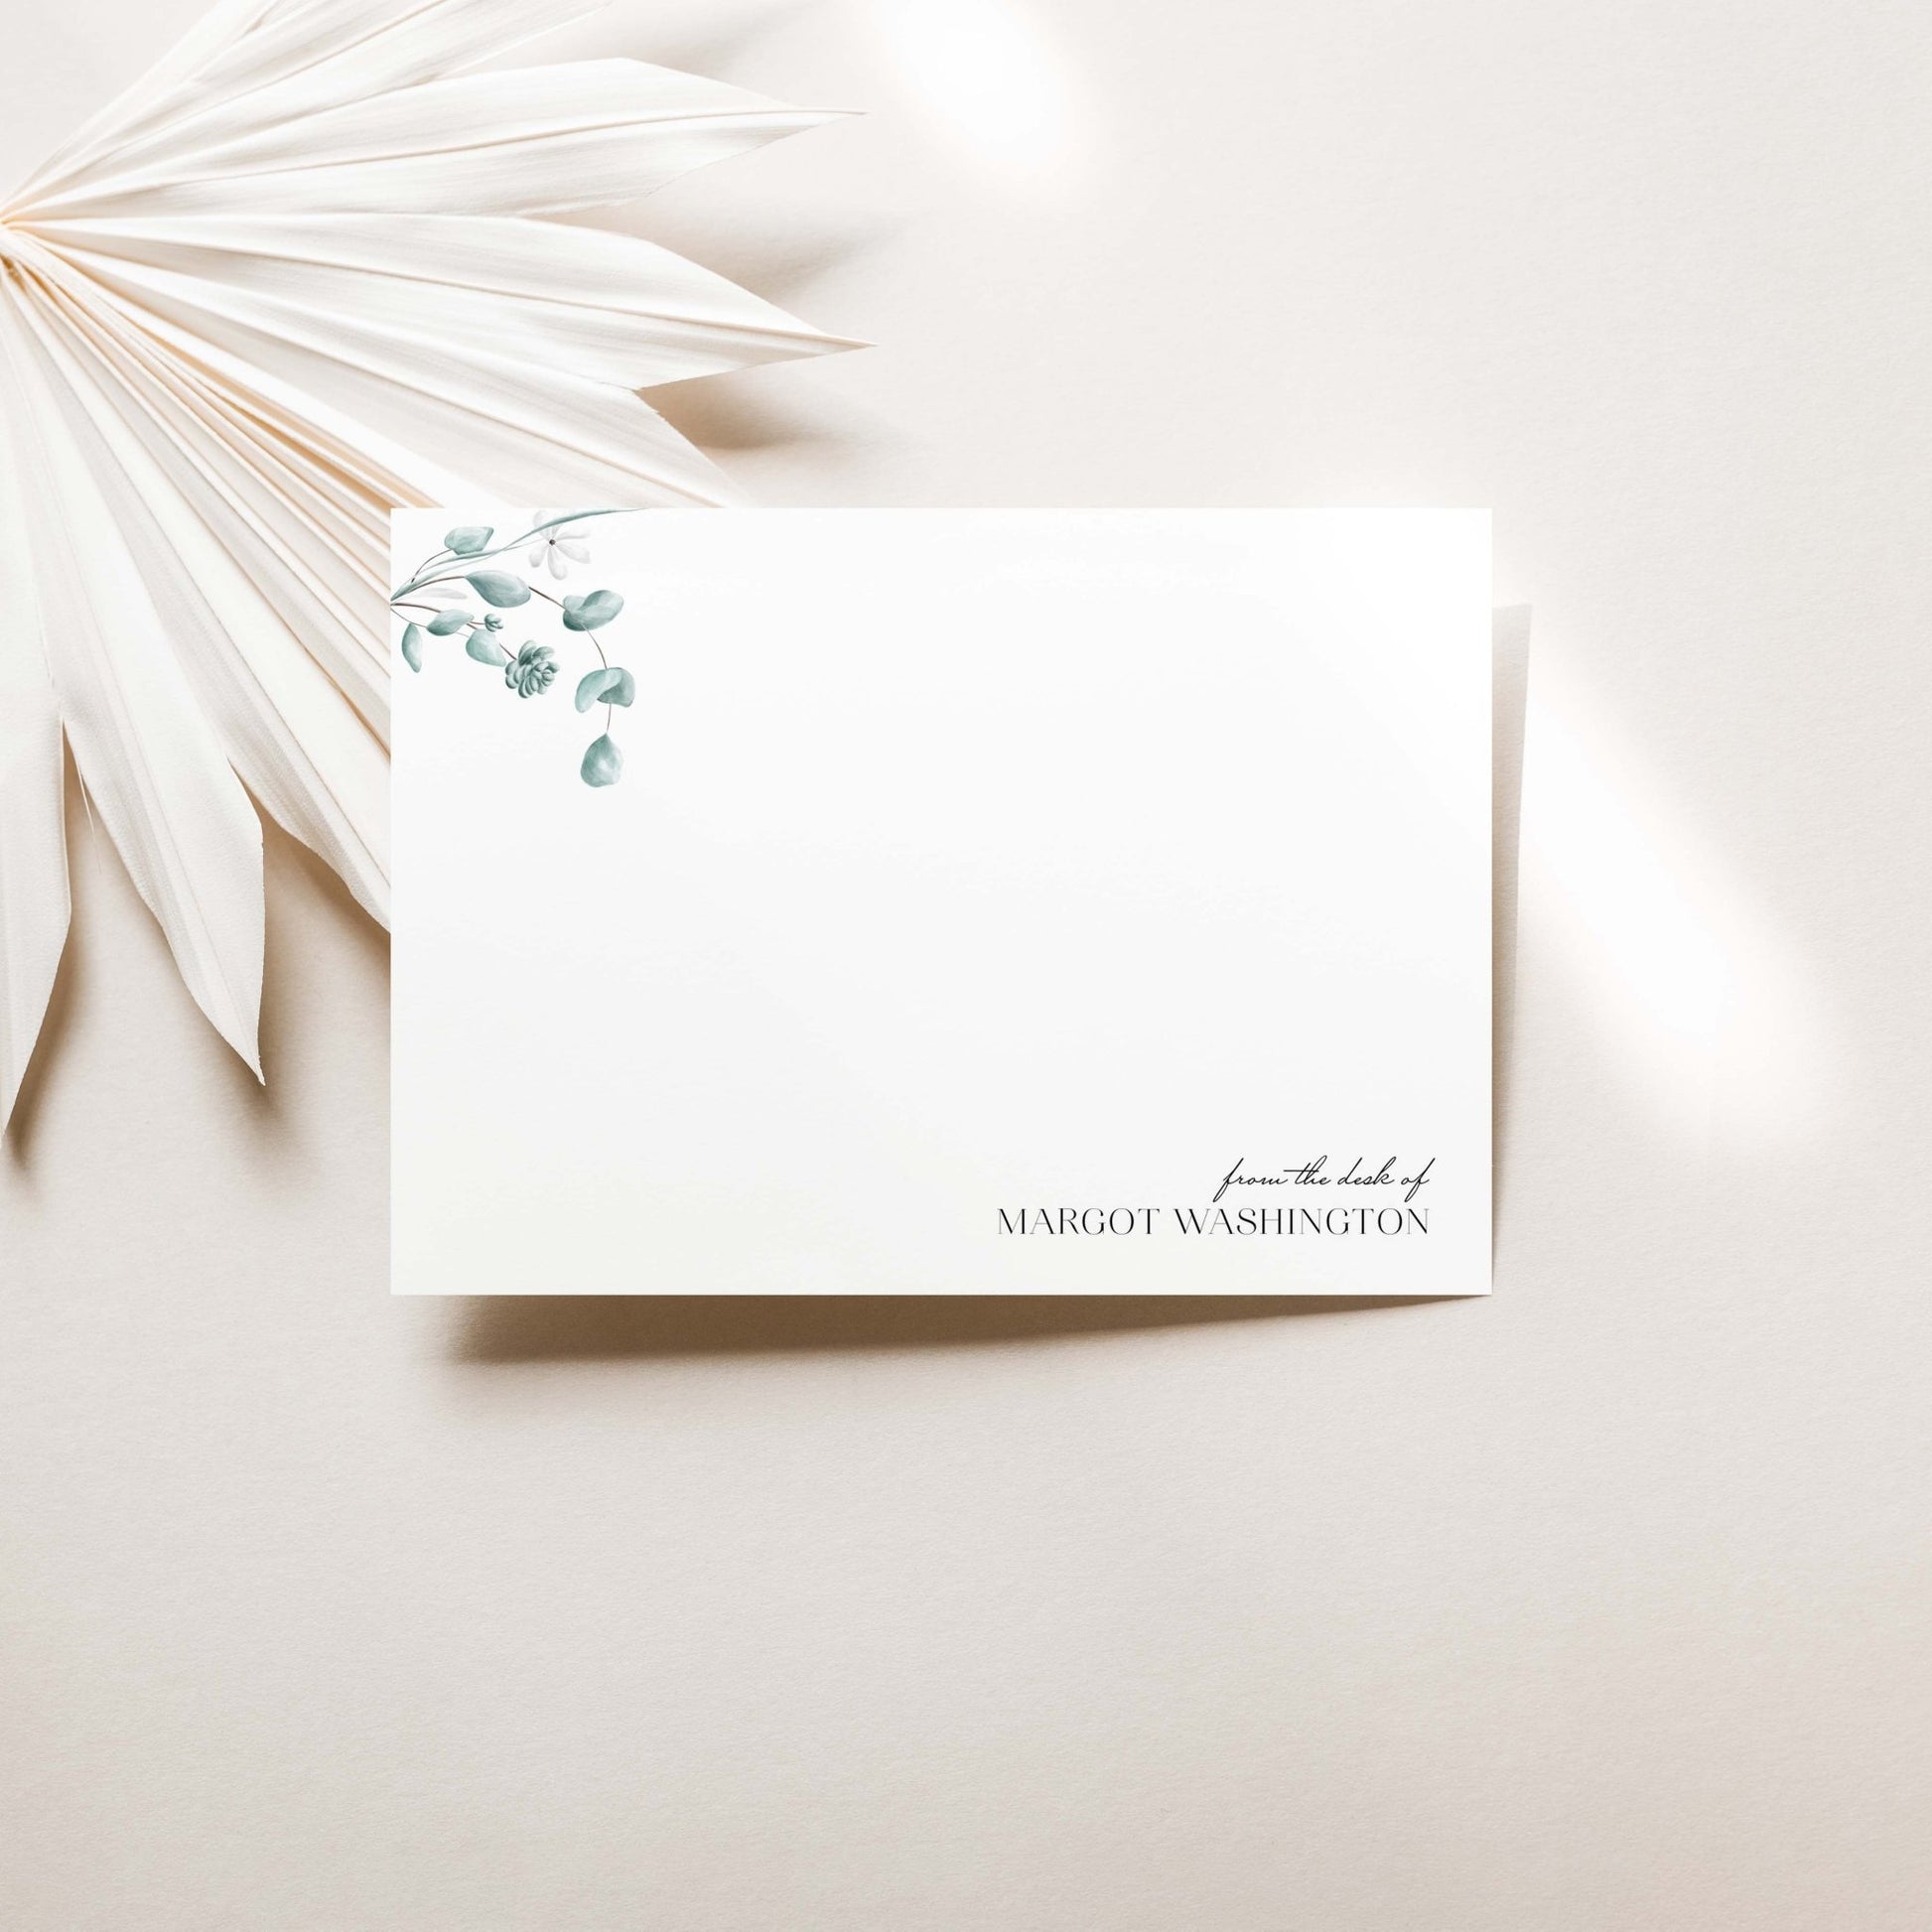 Simple Floral Notecards - Blú Rose